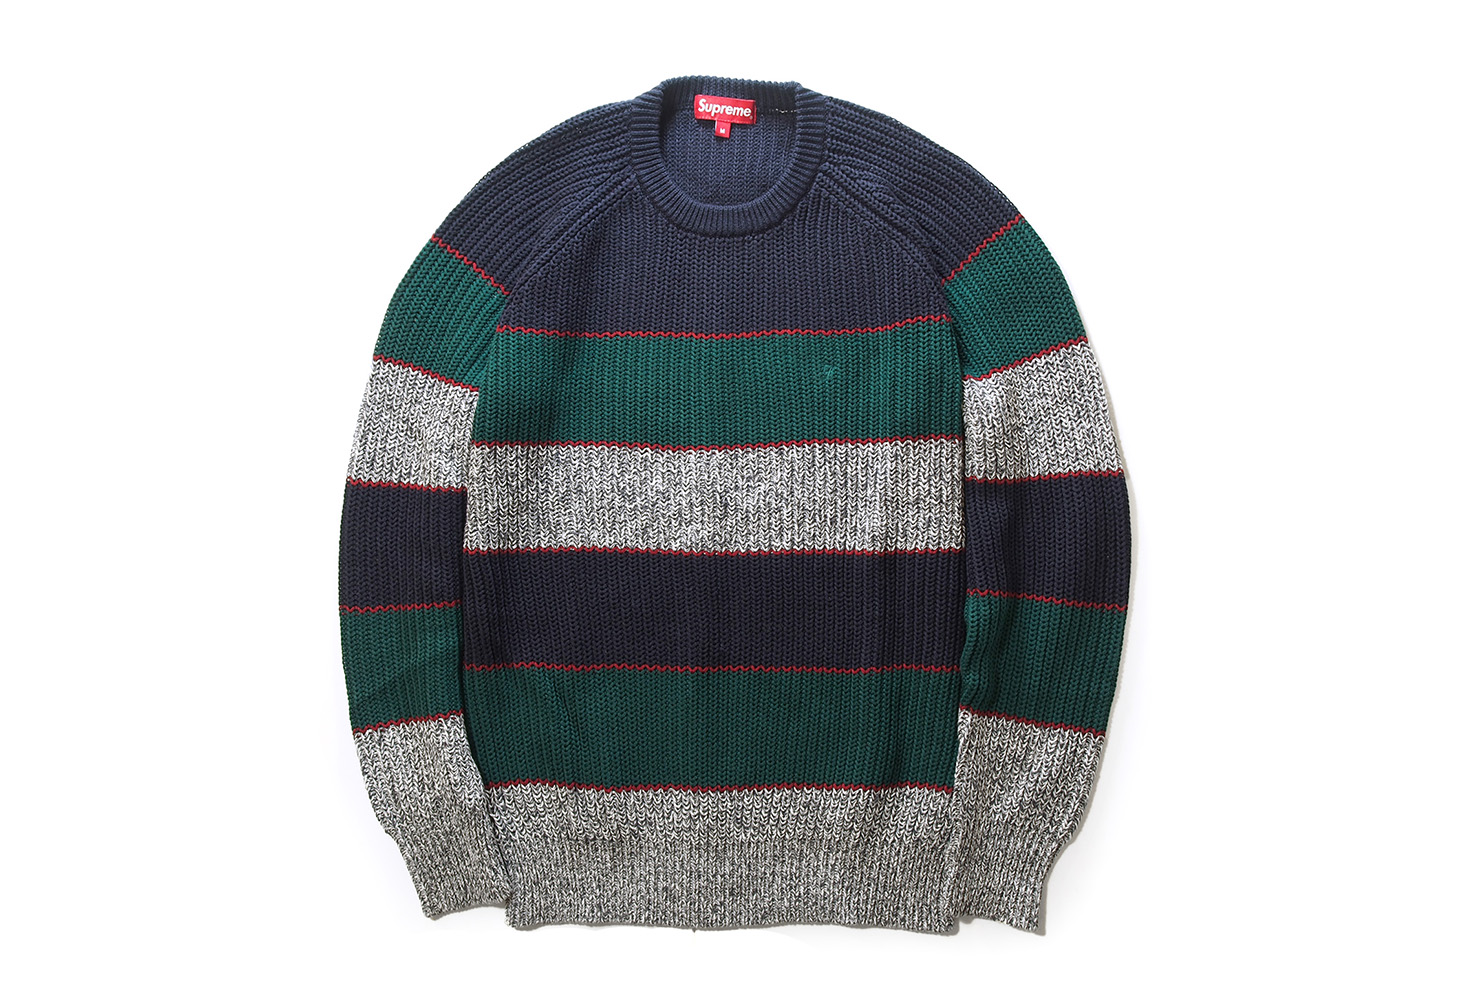 supremeSupreme Rib Crewneck Sweater